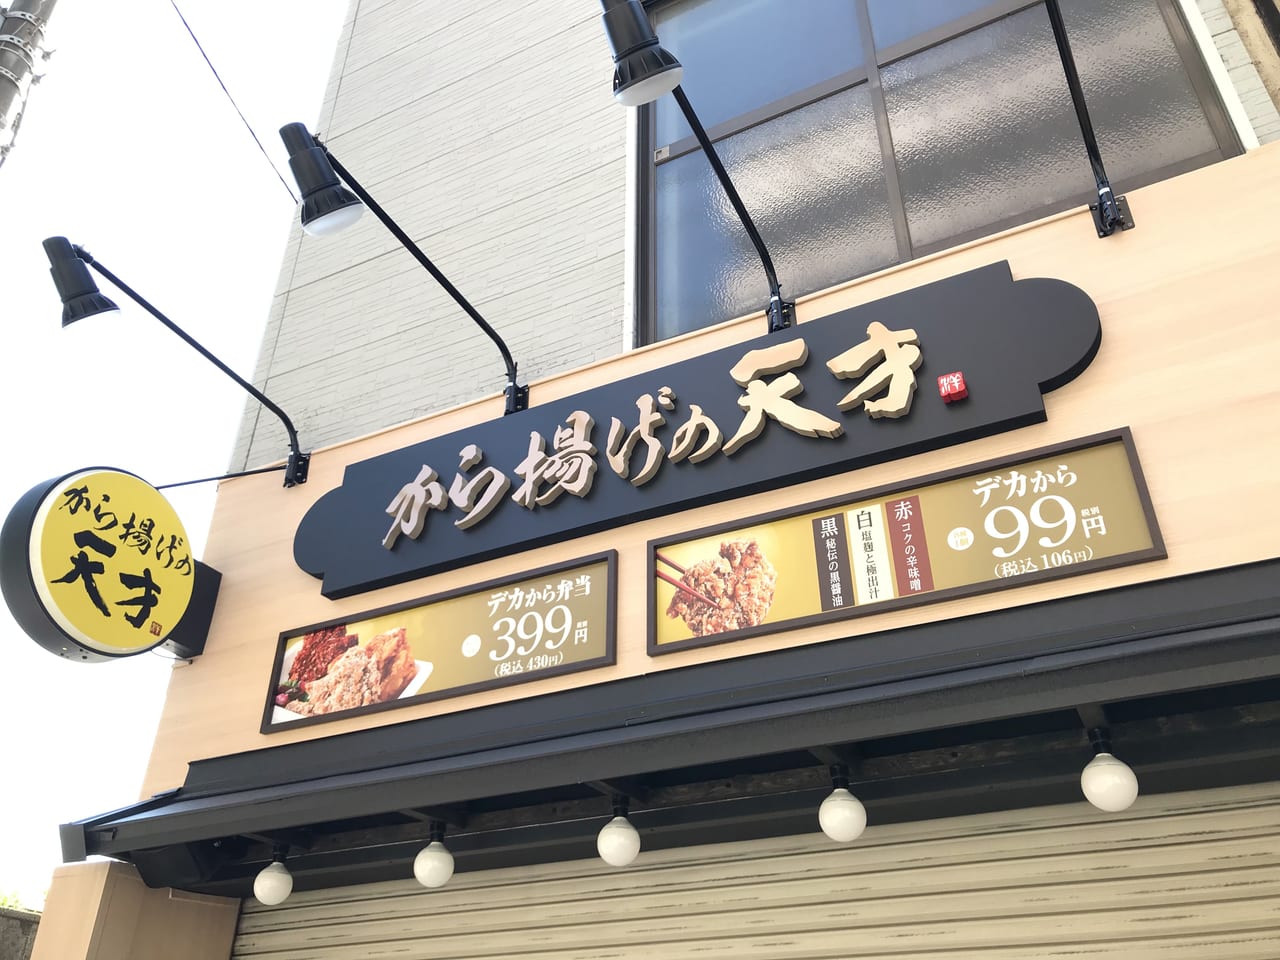 世田谷区から揚げの天才尾山台駅前店が2021年6月1日オープン予定です。